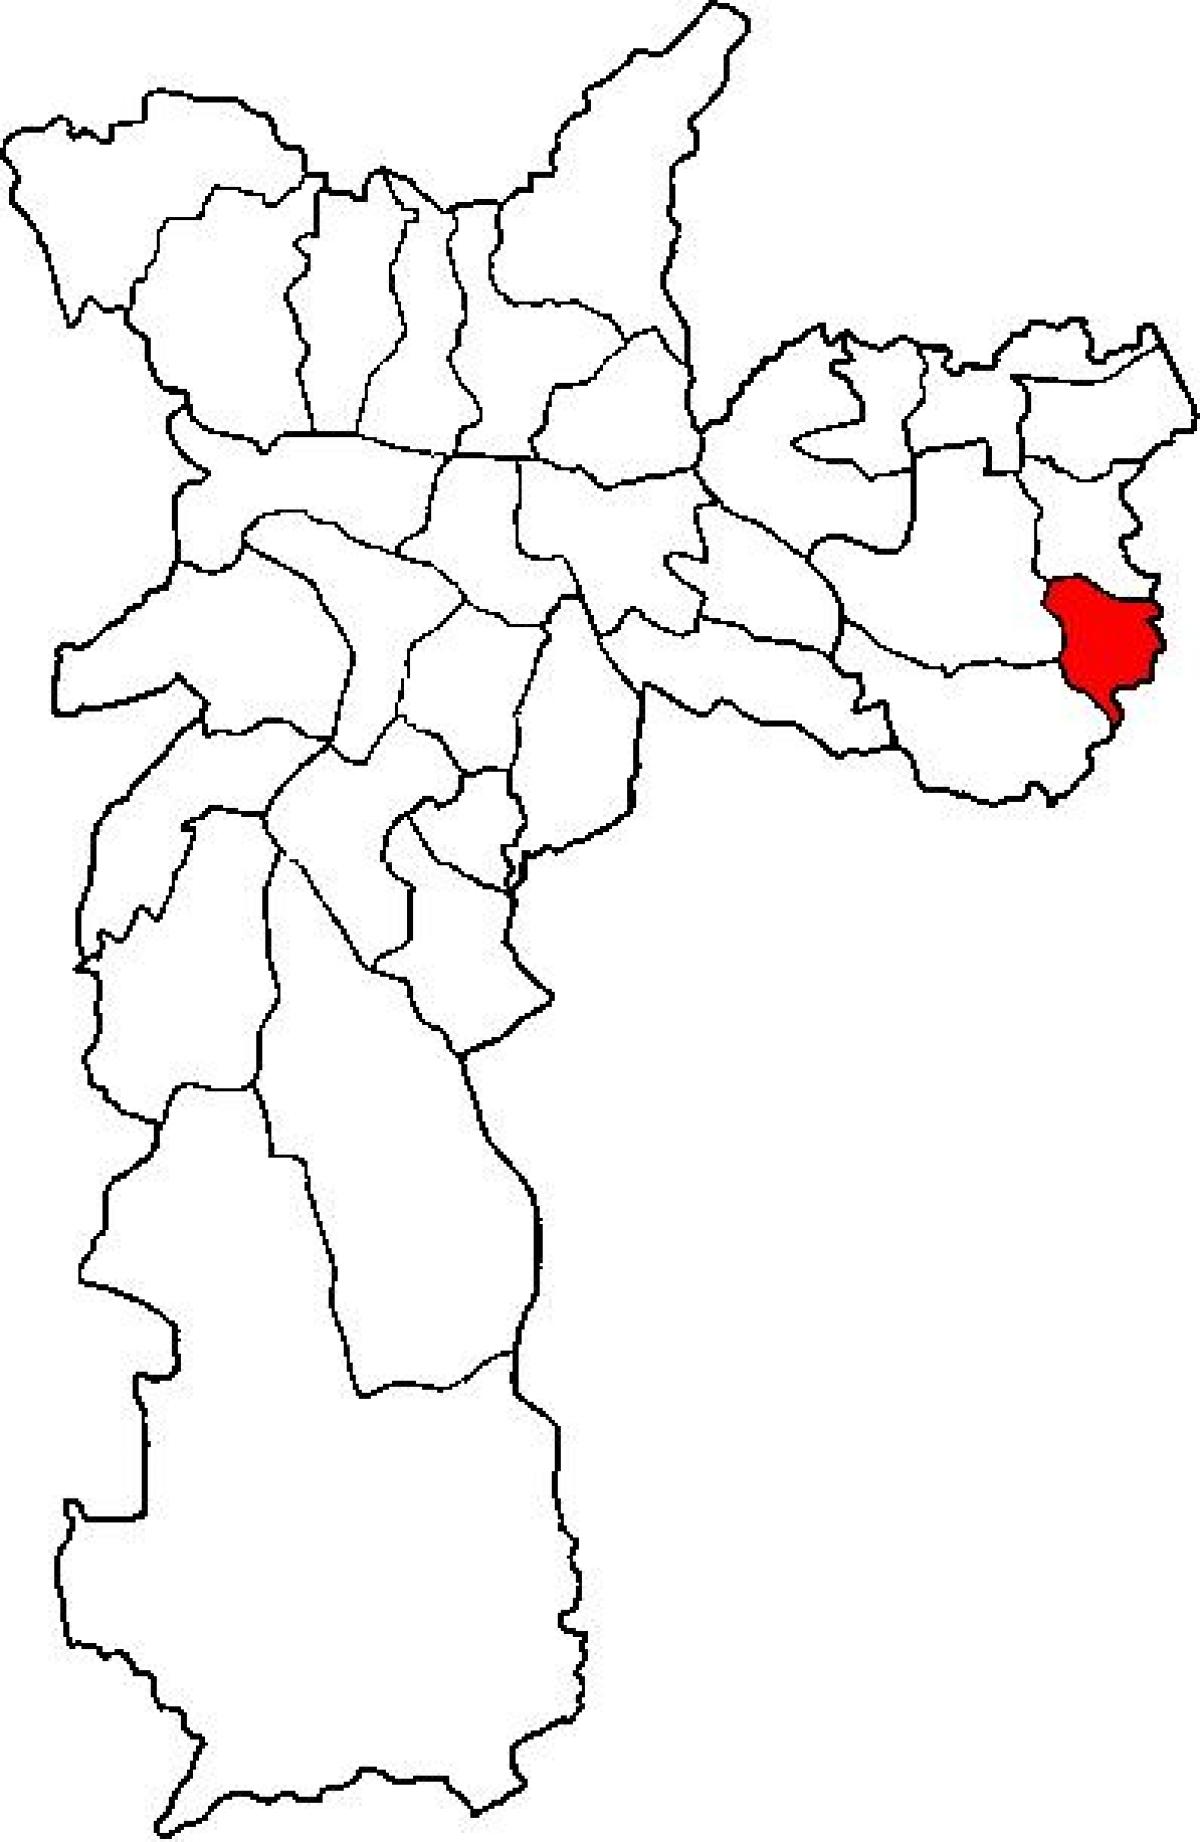 แผนที่ของ Cidade Tiradentes รายการย่อยขอ prefecture São Paulo